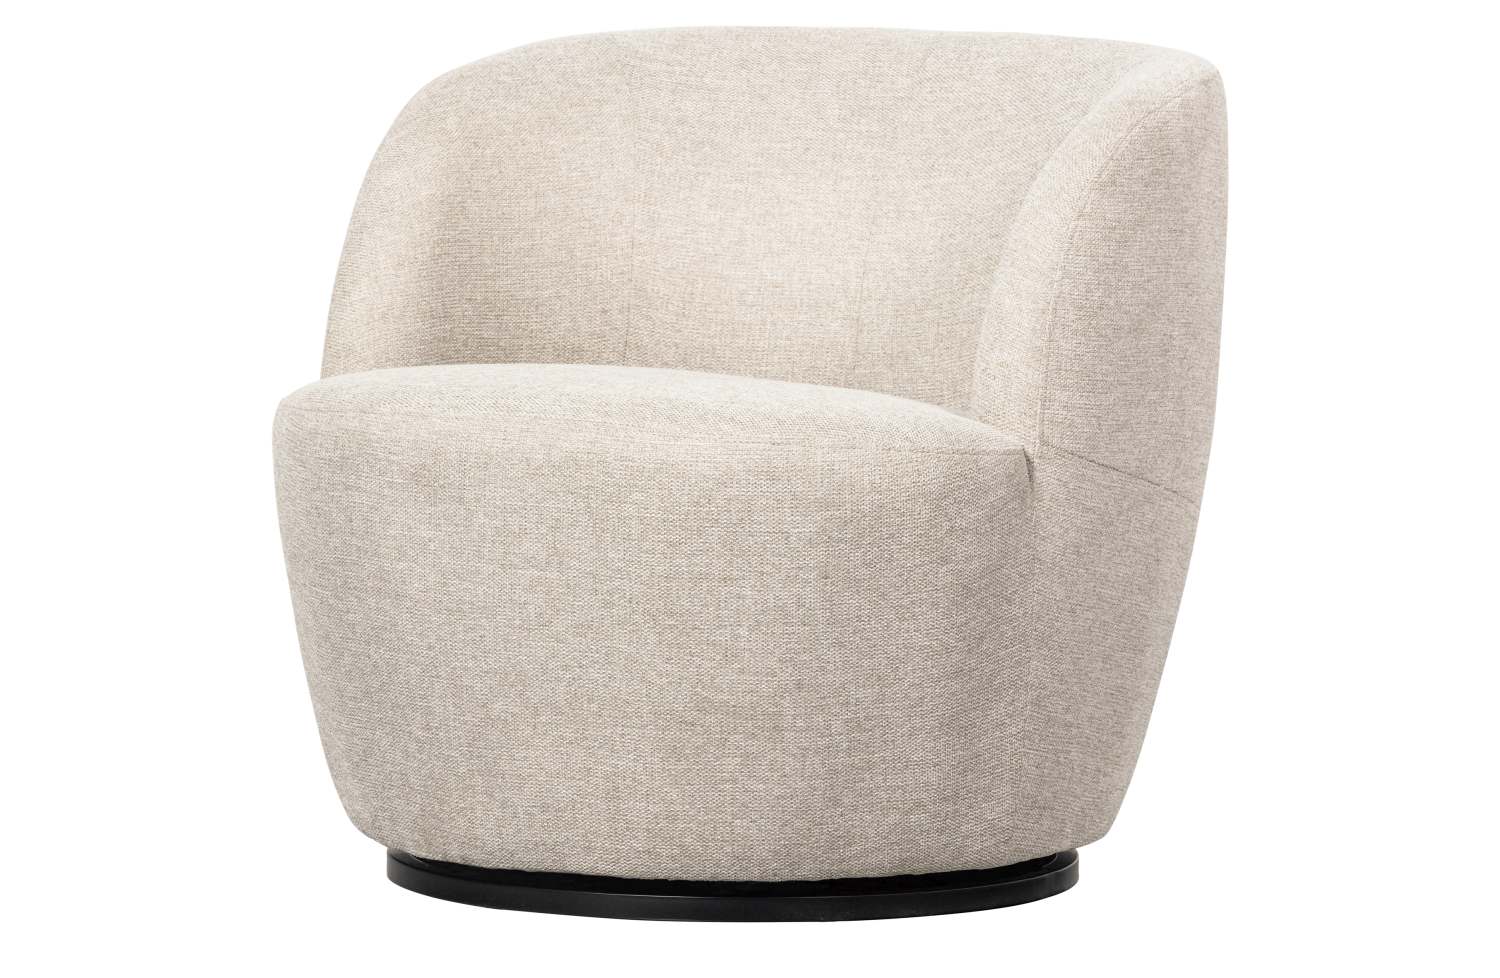 Der Drehsessel Serra überzeugt mit seinem modernen Design. Gefertigt wurde er aus Webstoff, welcher einen weißen Farbton besitzt. Das Gestell ist aus Metall und  hat eine schwarze Farbe. Die Sitzhöhe des Sessels beträgt 42 cm.